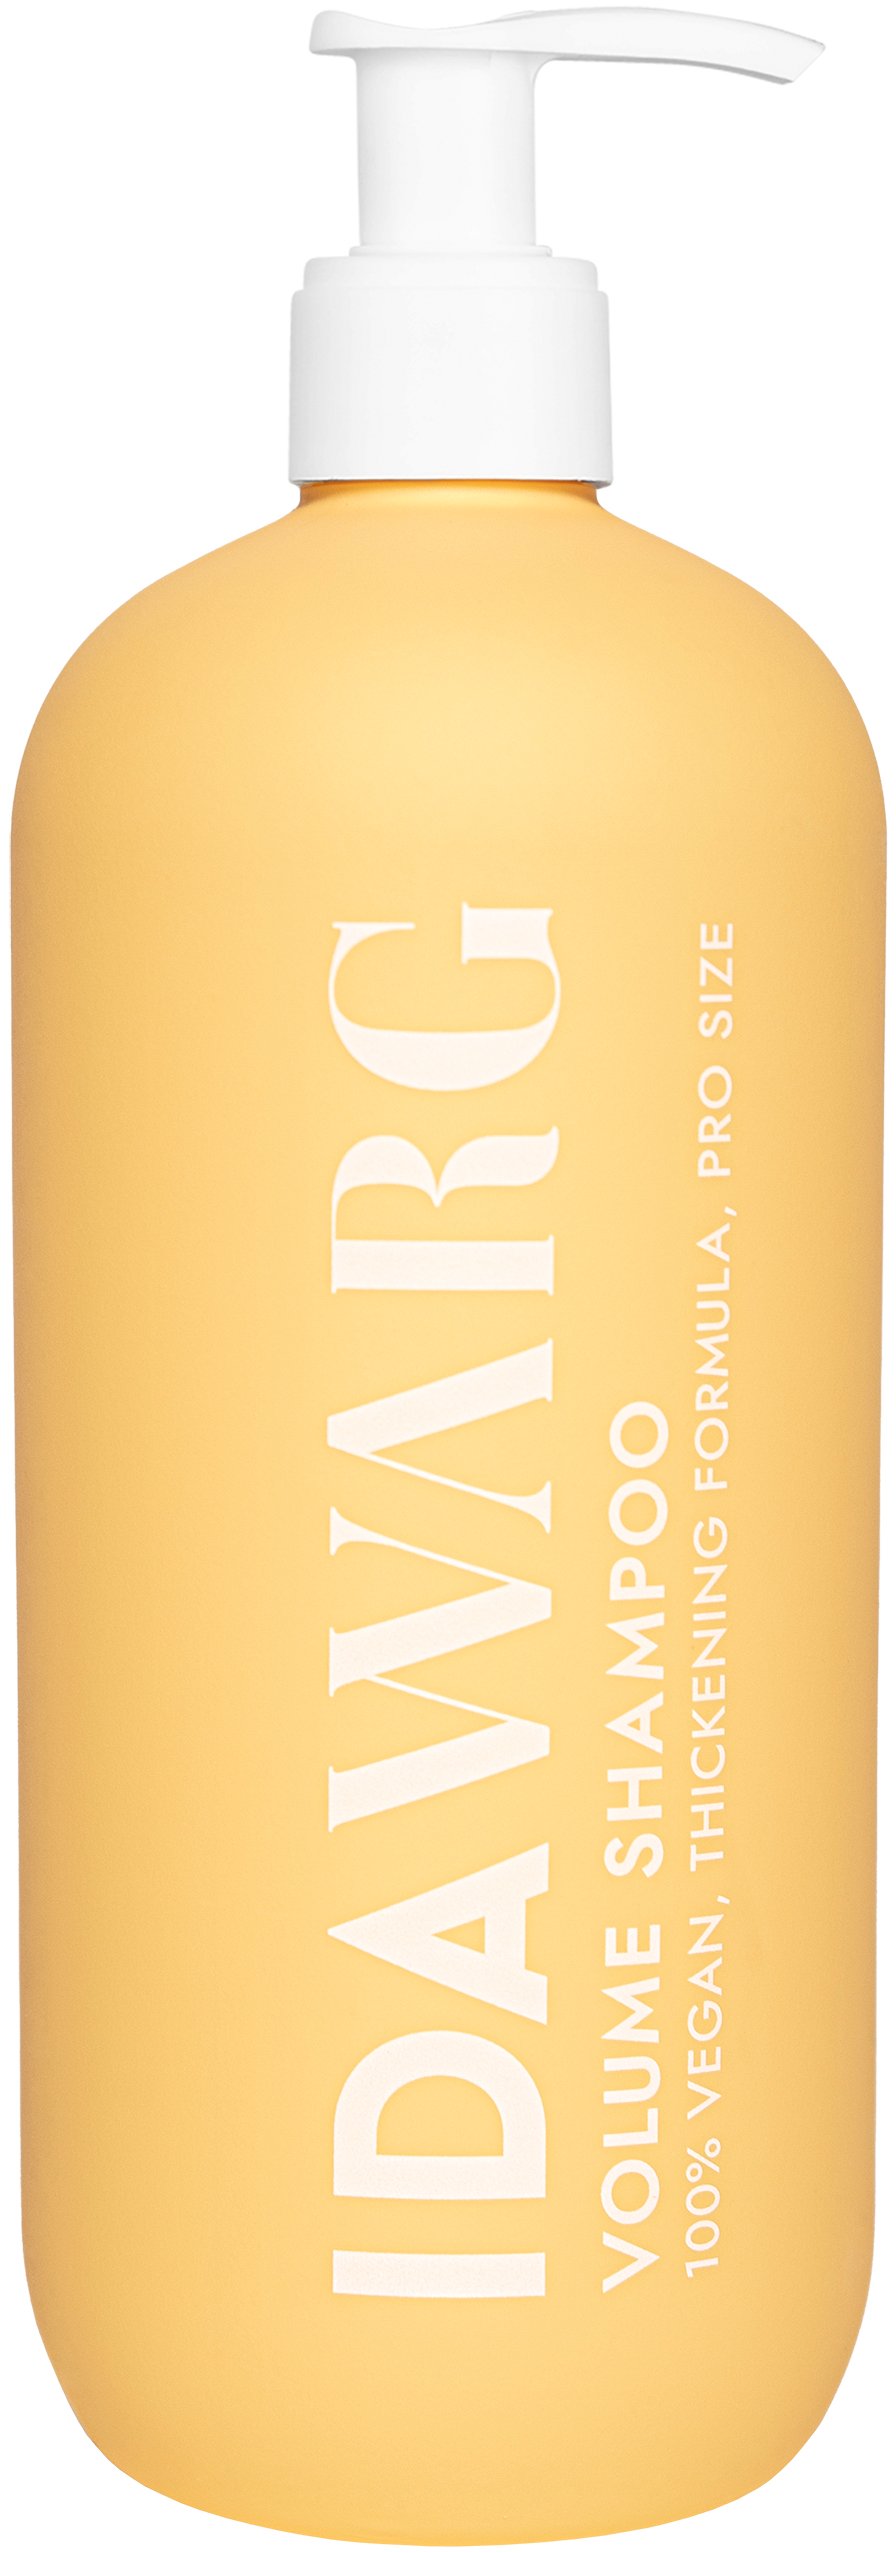 Ida Warg Beauty Volume Shampoo PRO Size 500 ml